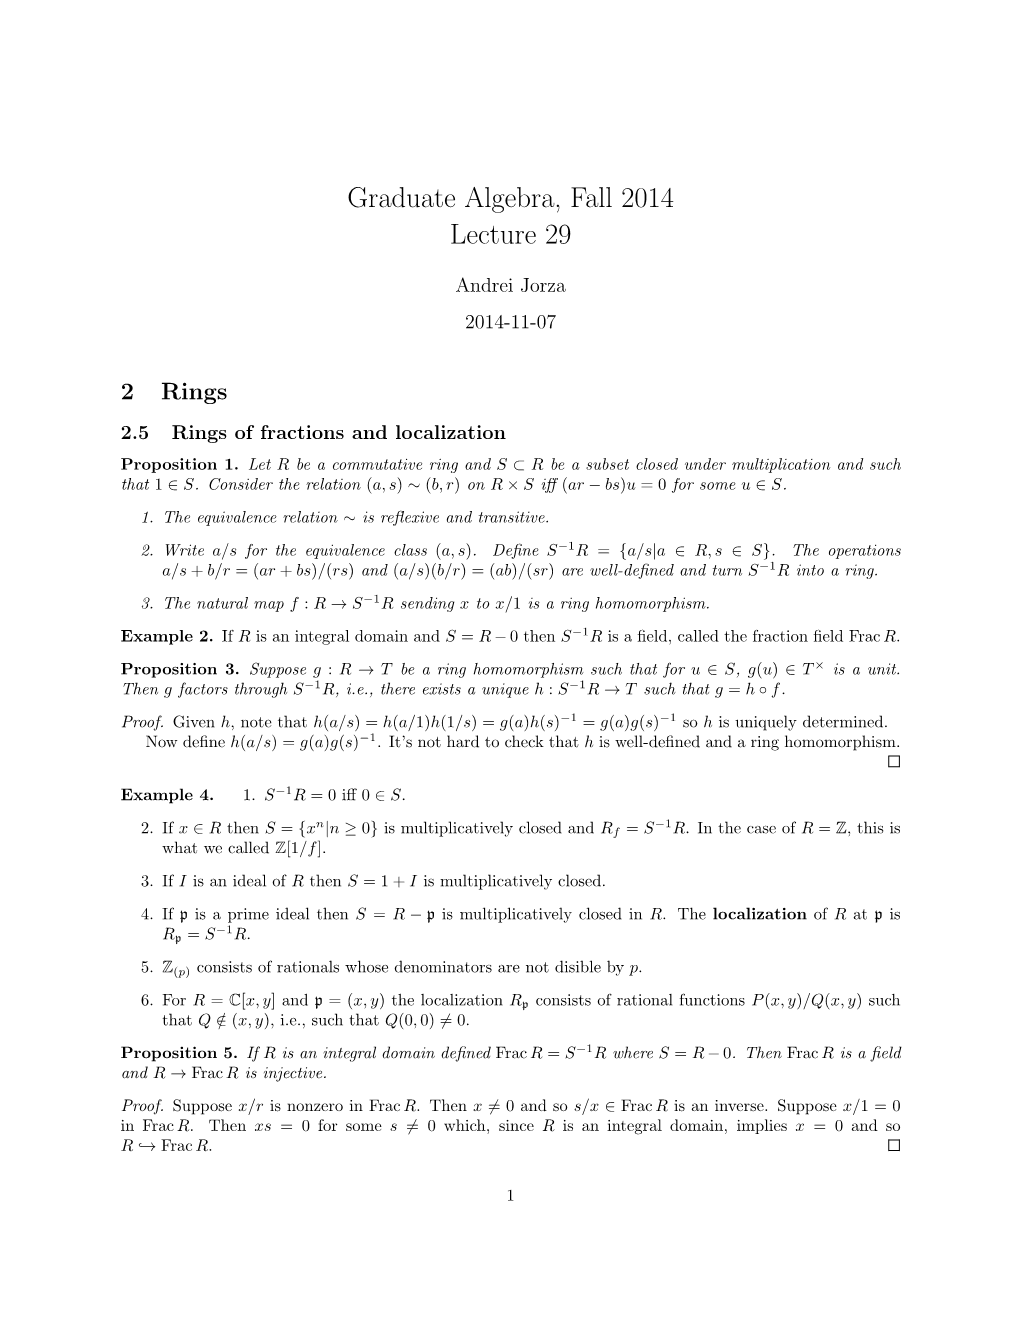 Graduate Algebra, Fall 2014 Lecture 29